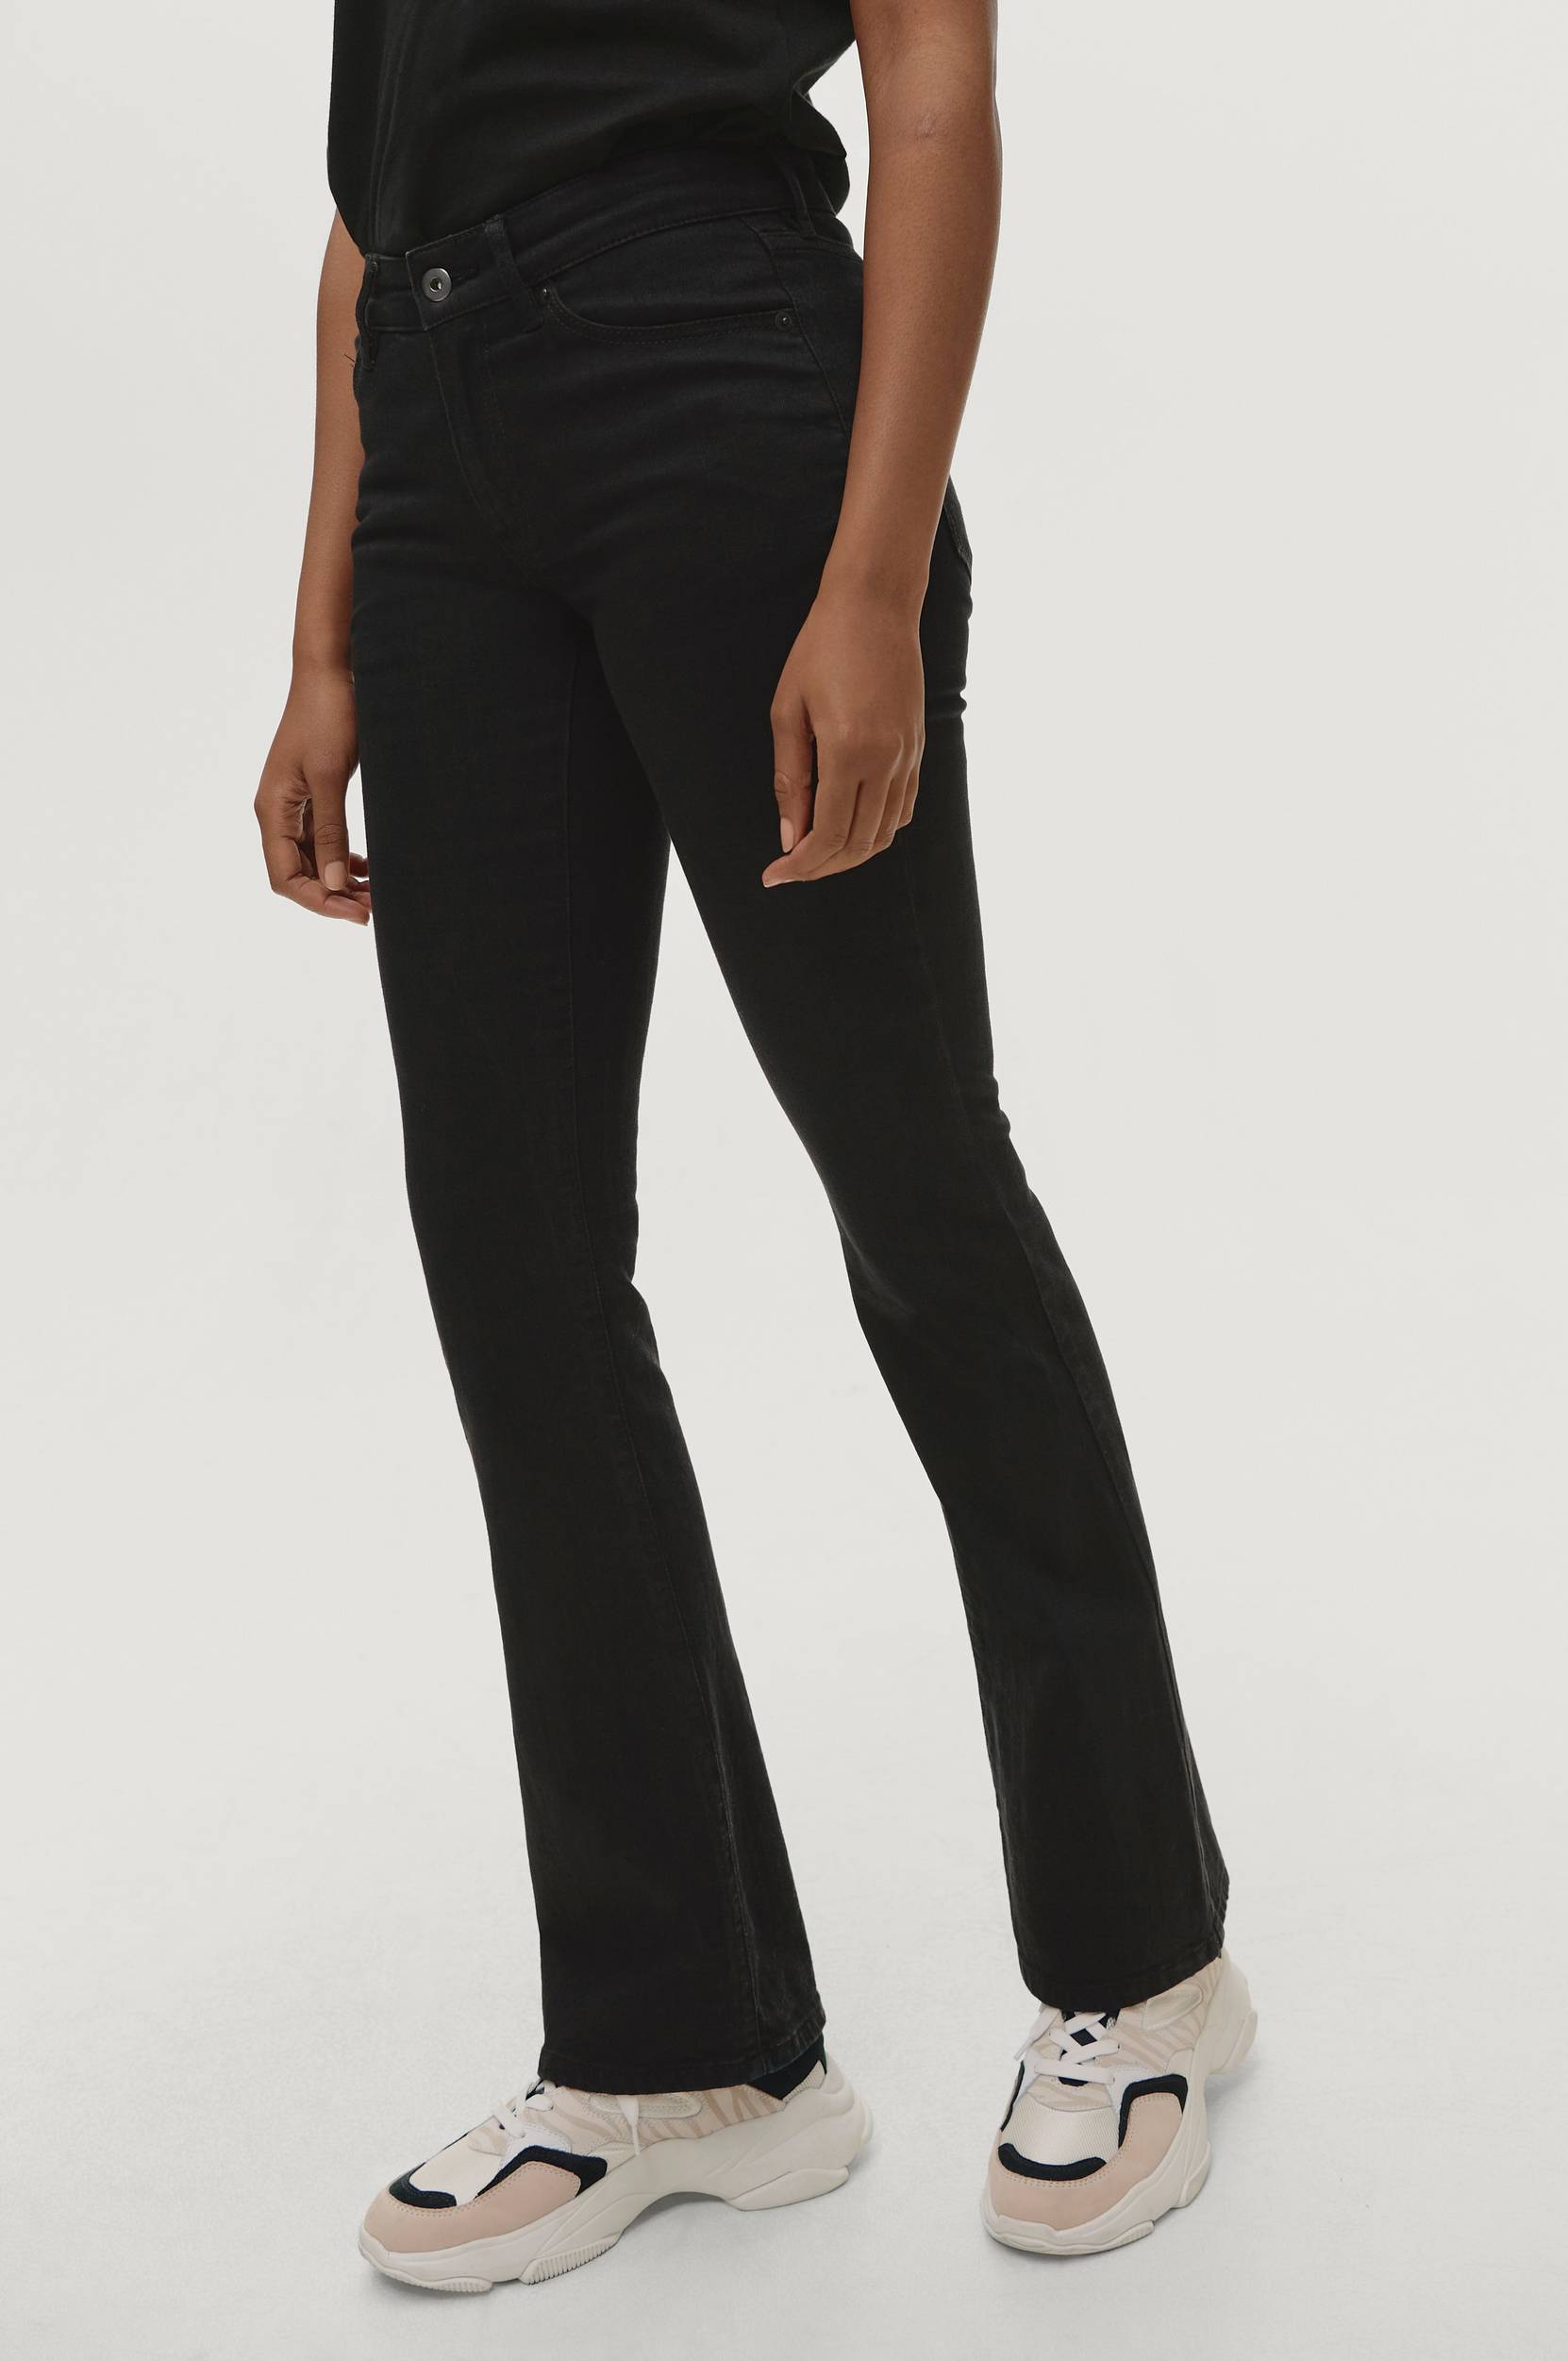 Ellos - Jeans Nora Bootcut - Sort - W36/L32 Jeans - Tøj til kvinder (29153050)